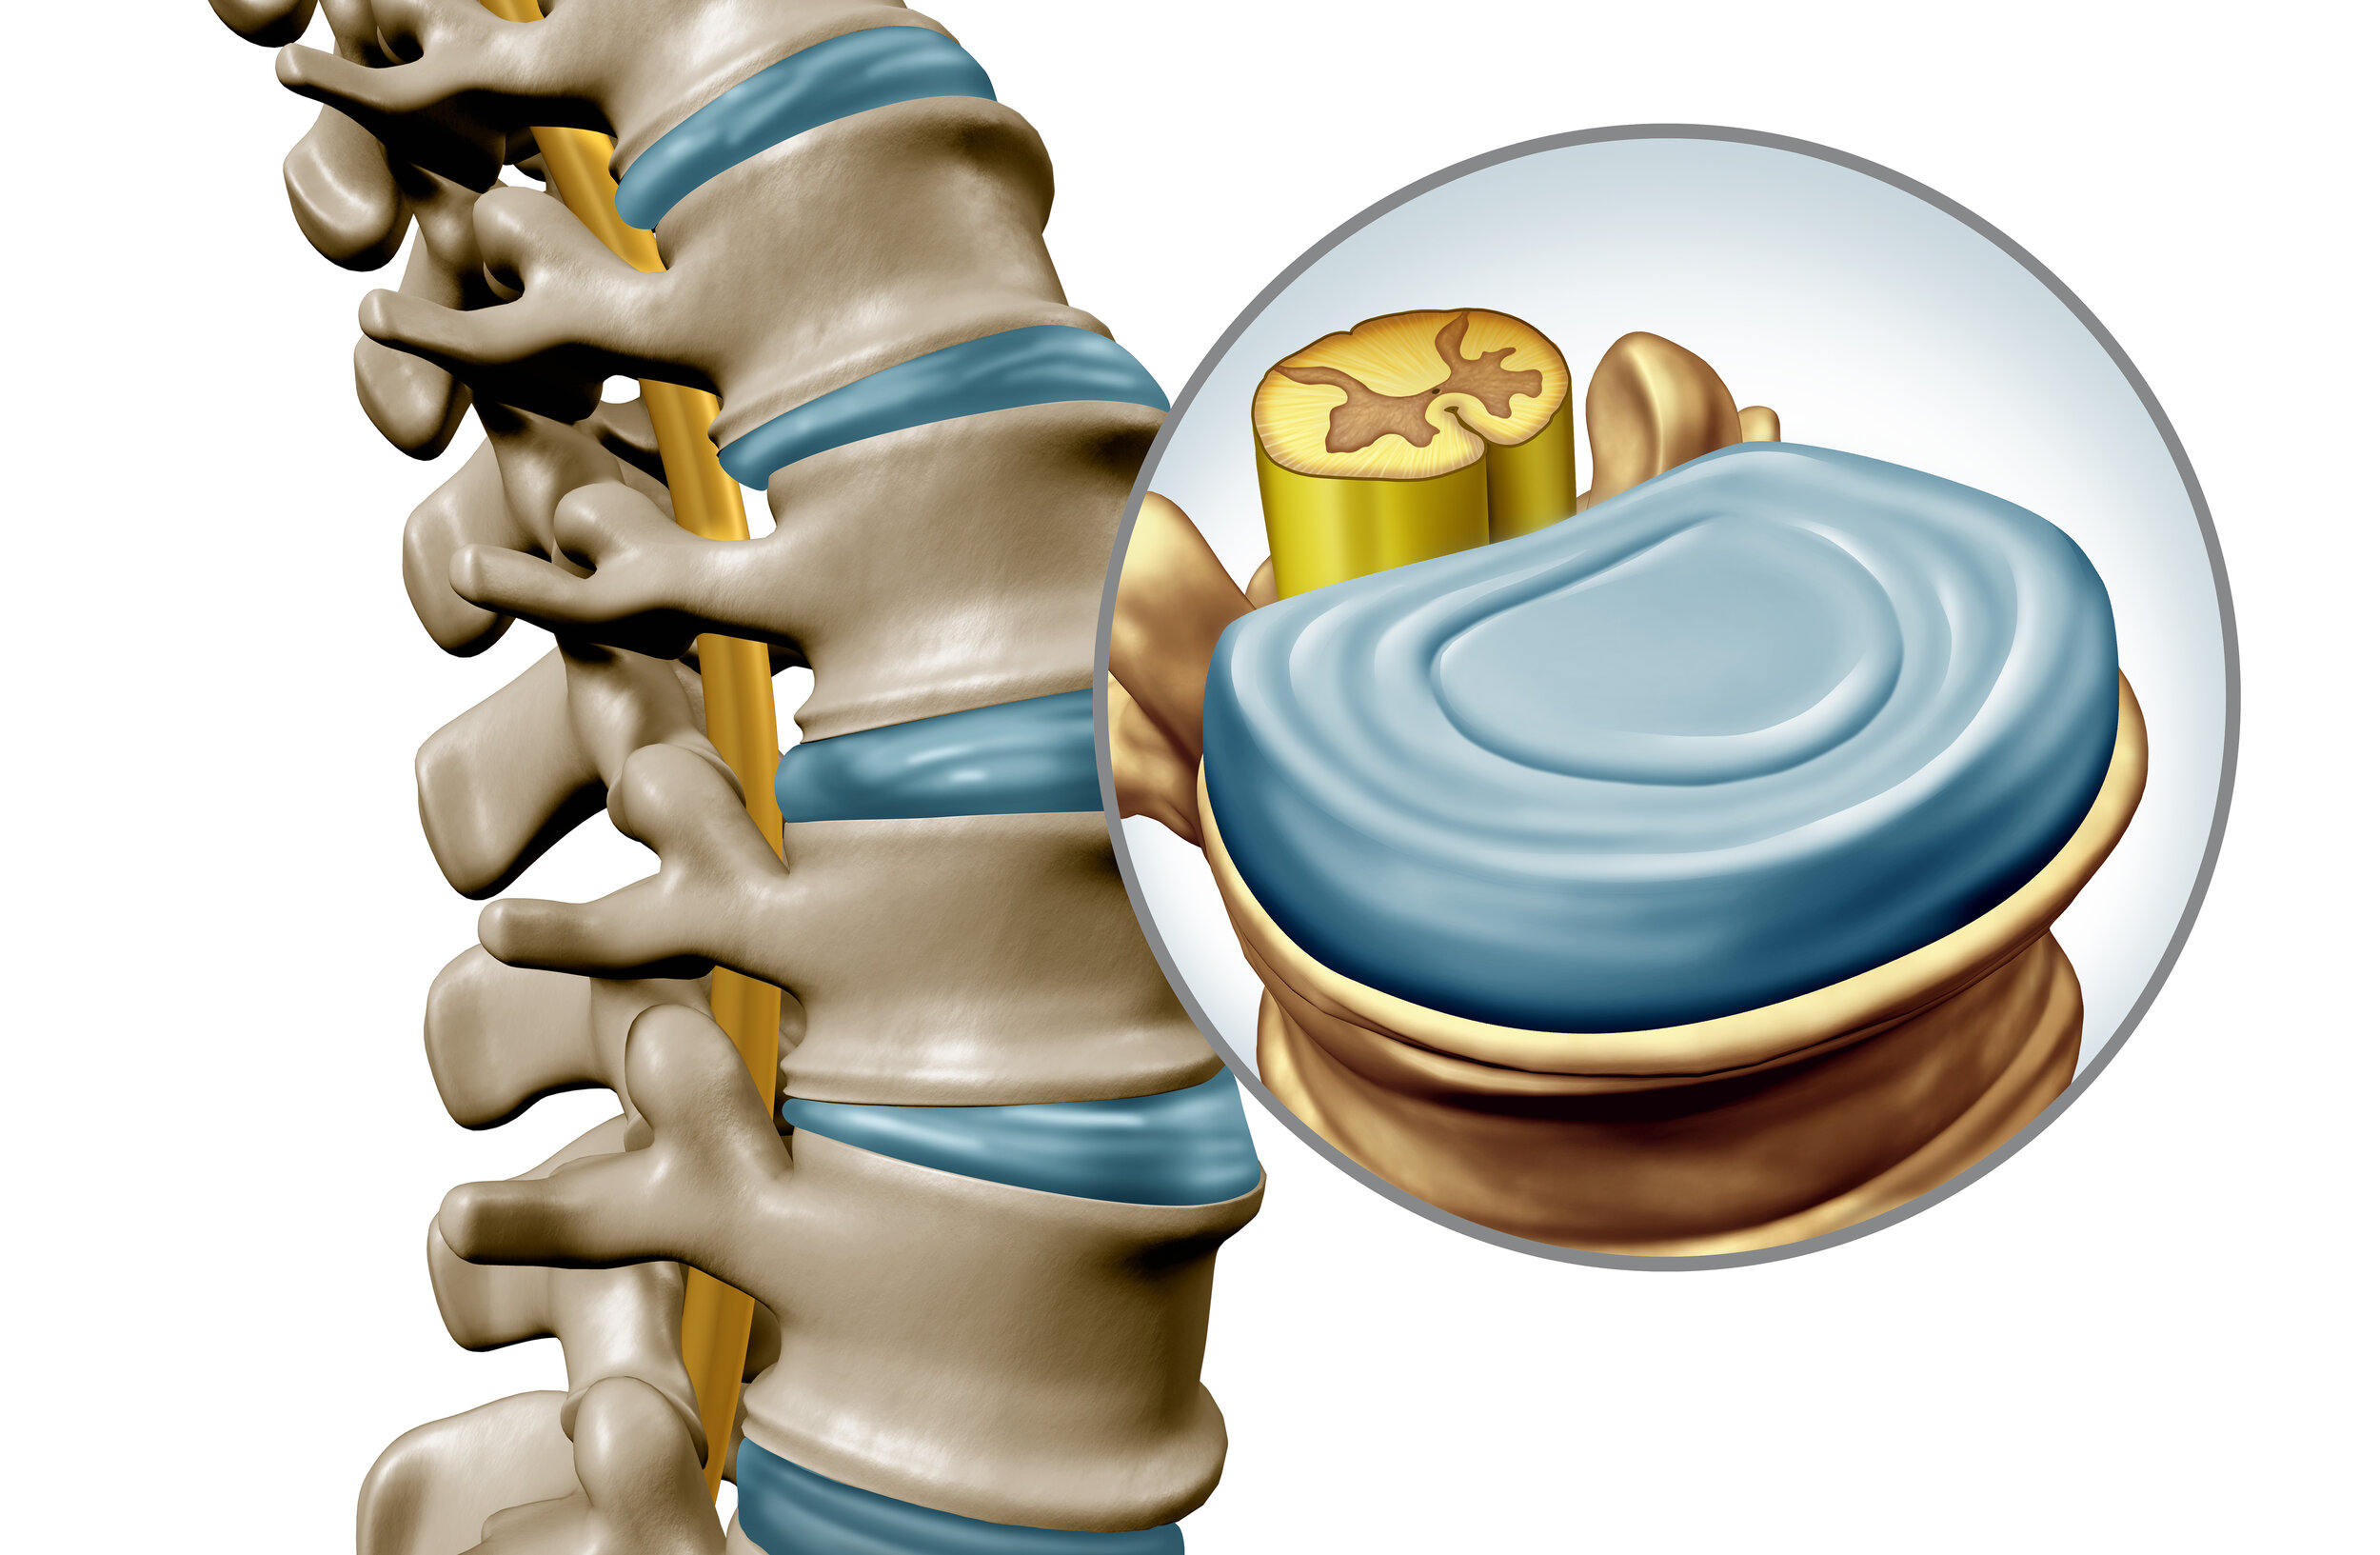 图1-2-2 椎间盘、前纵韧带和椎骨间的连结-新编人体解剖学-医学